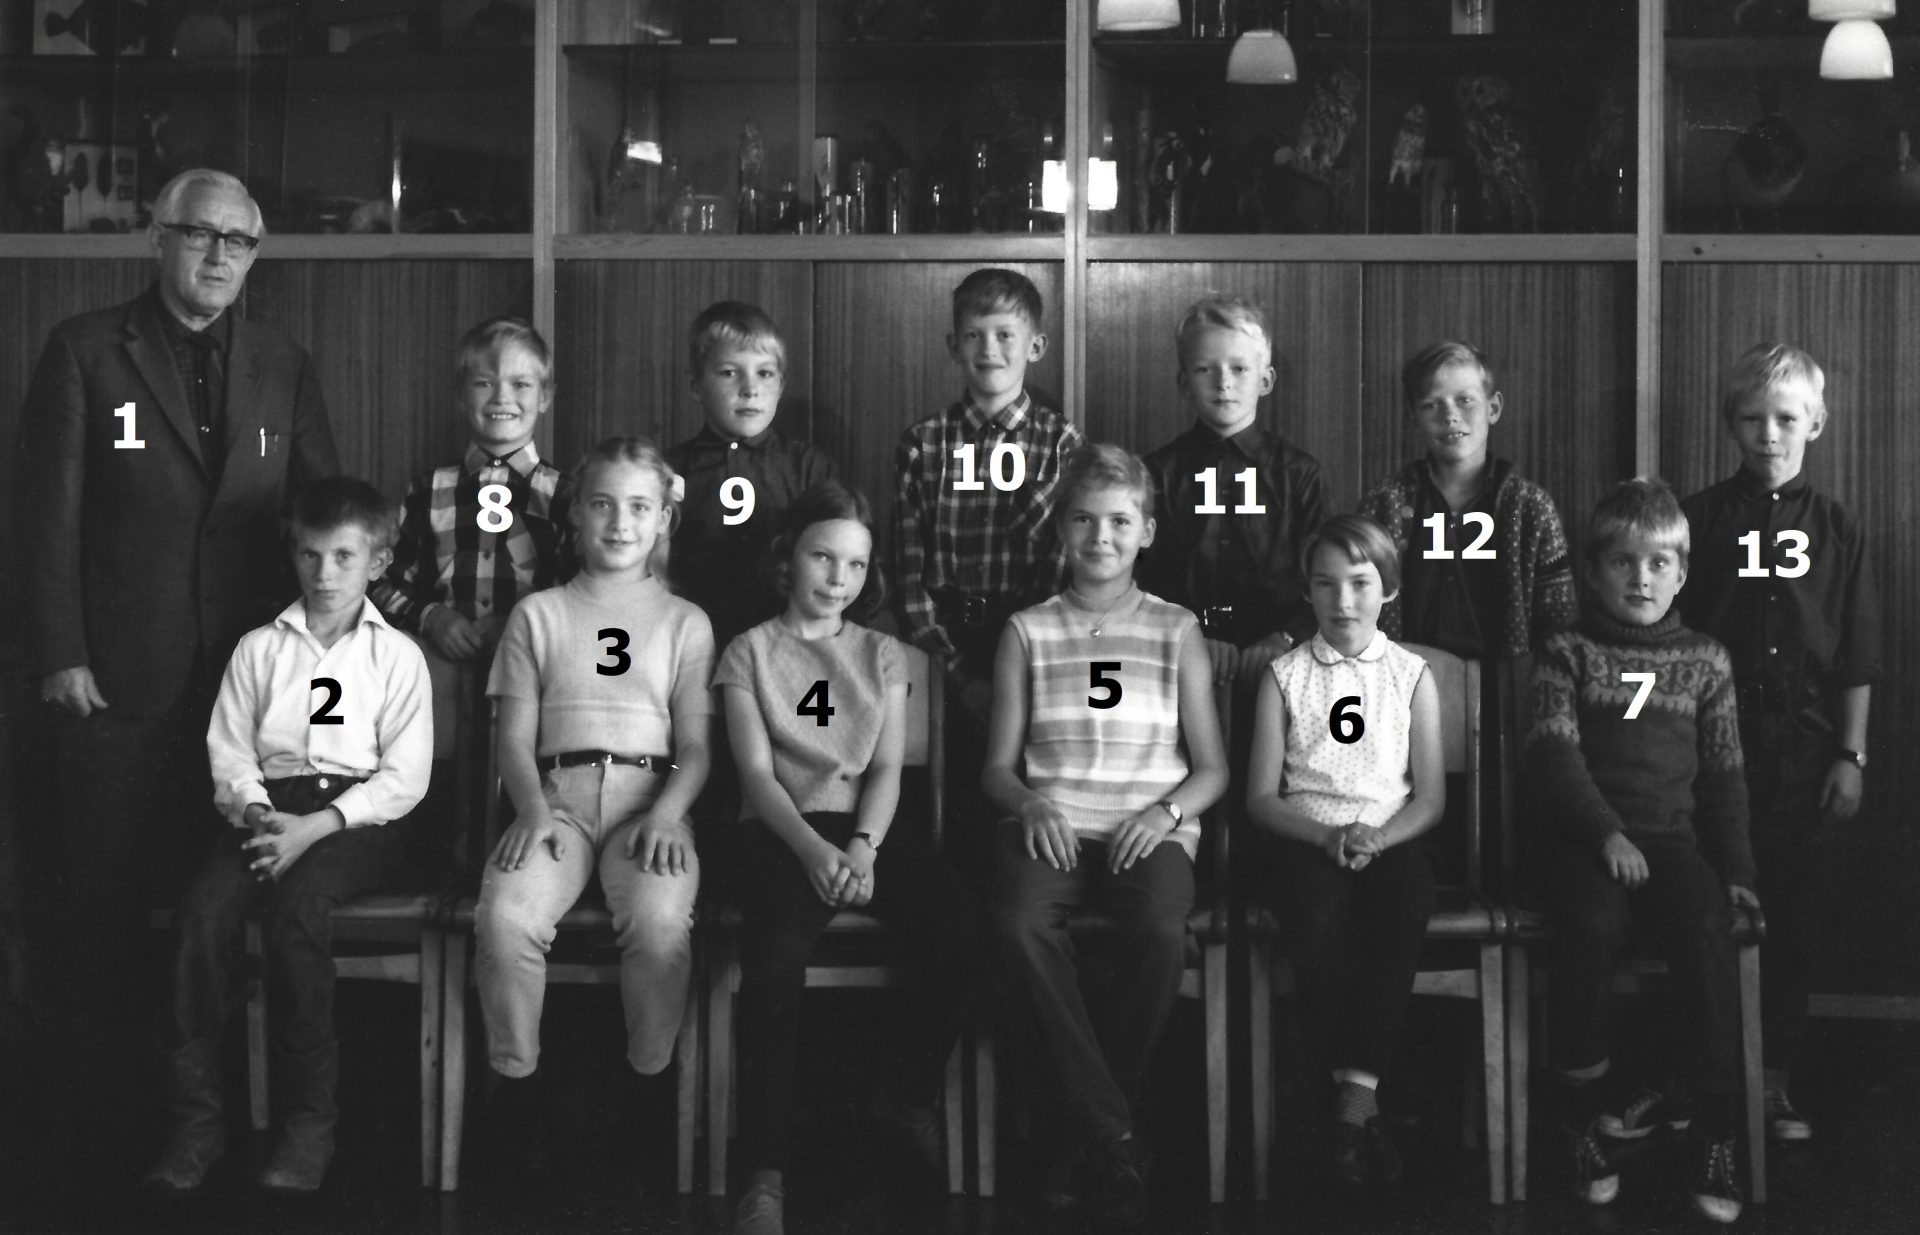 Vind Skole, 5. klasse 1969-70. Klik på billedet for at se det i større format.